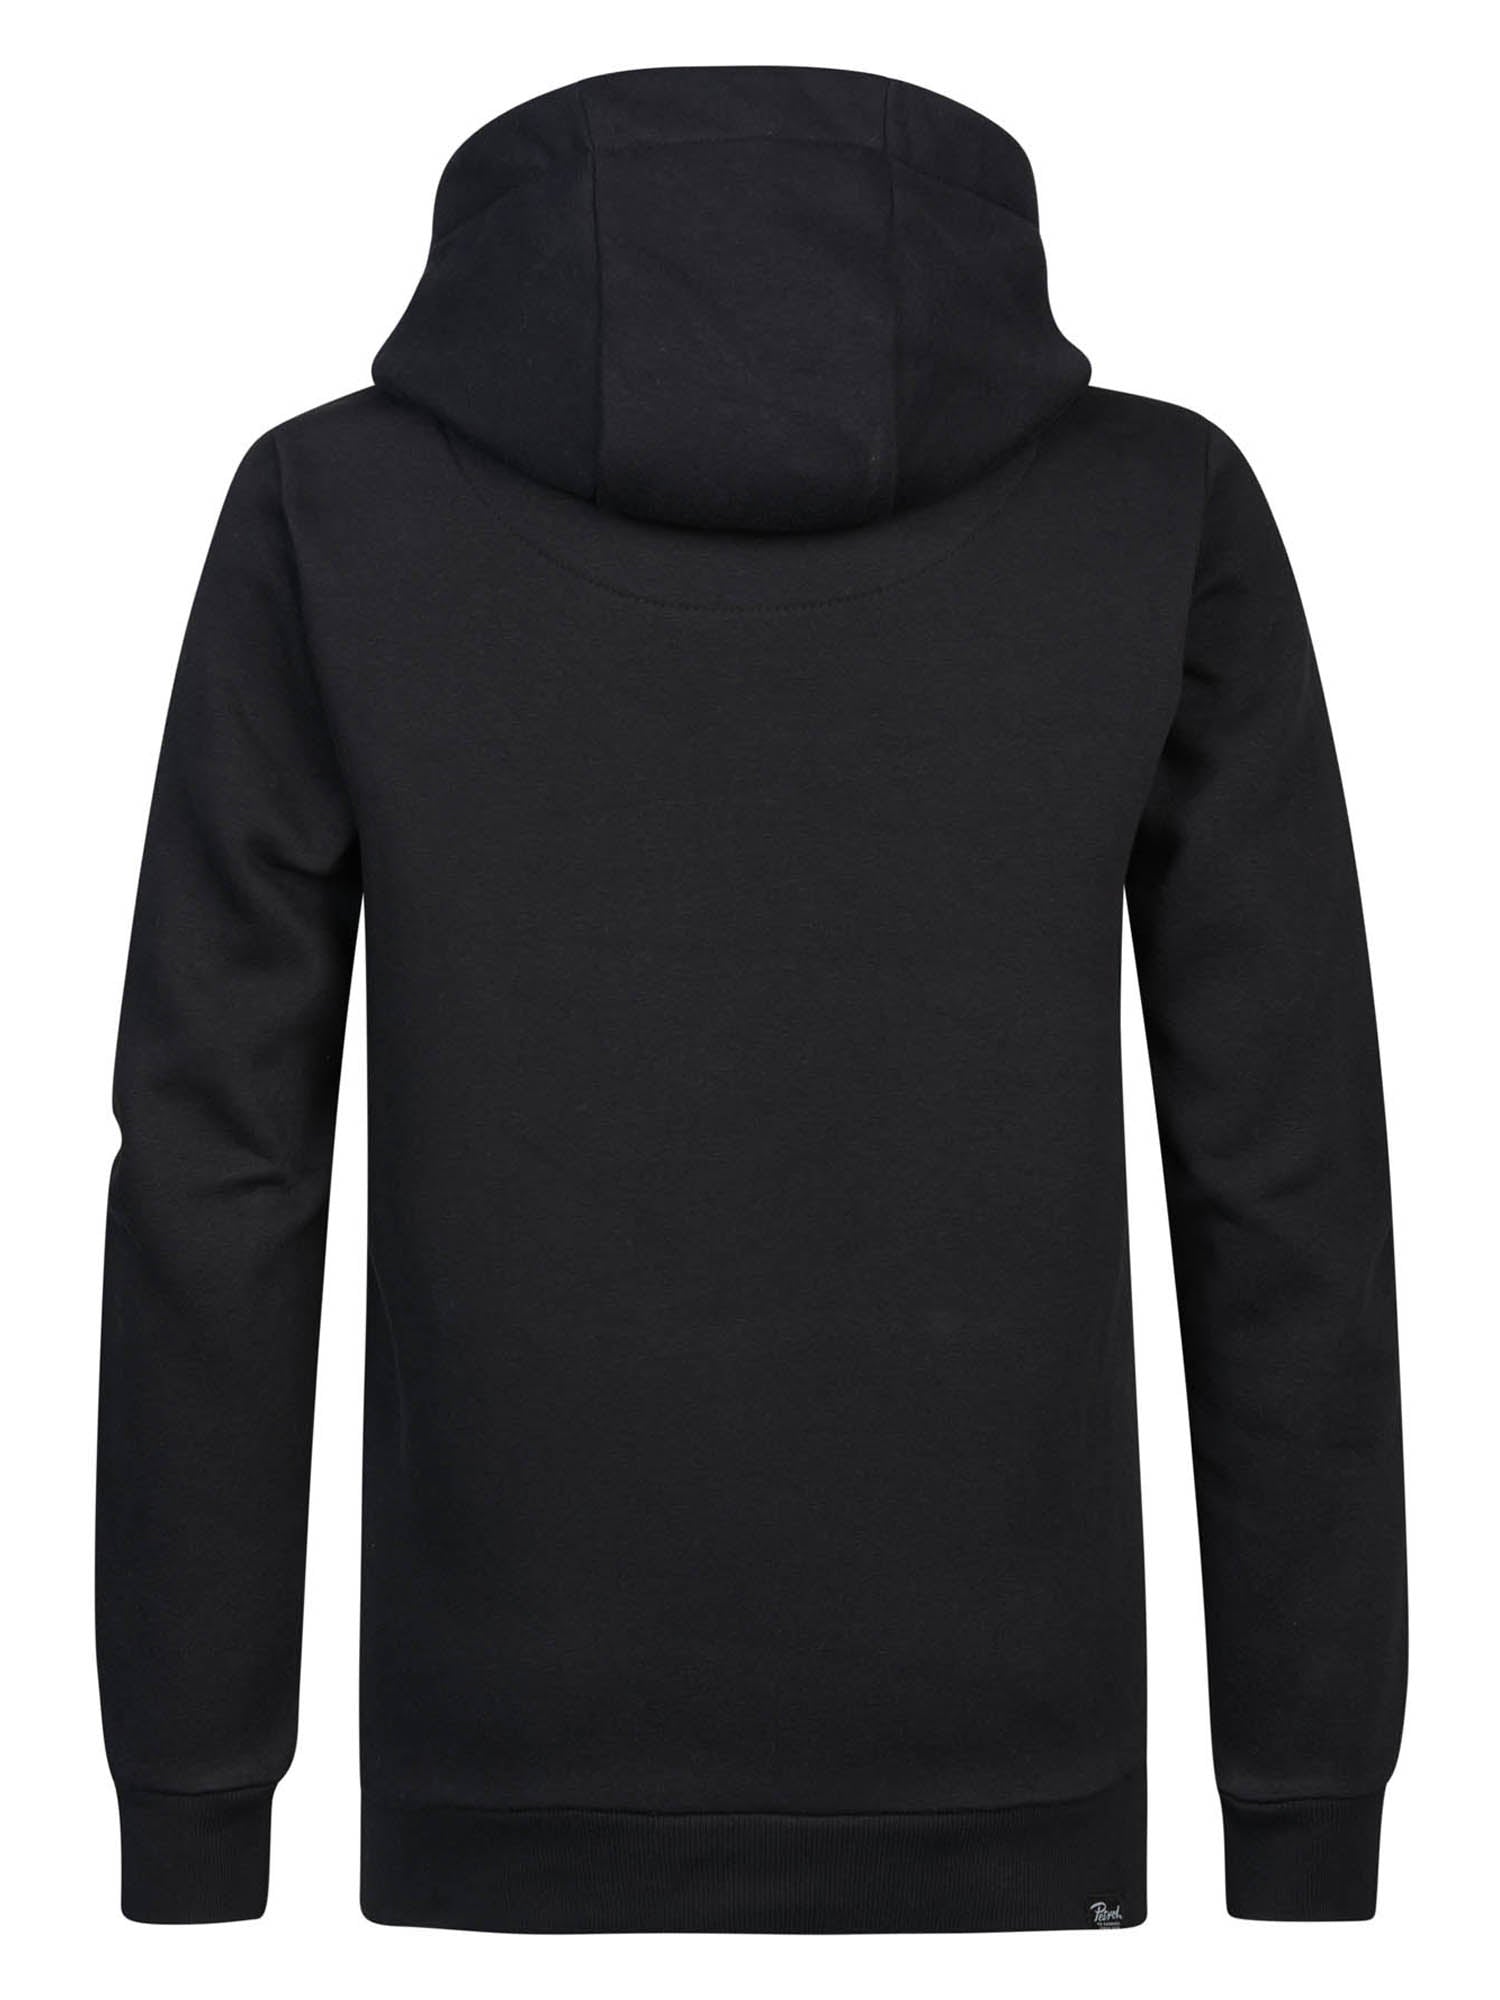 Jongens Sweater Hooded Zip van Petrol in de kleur Dark Black in maat 164.